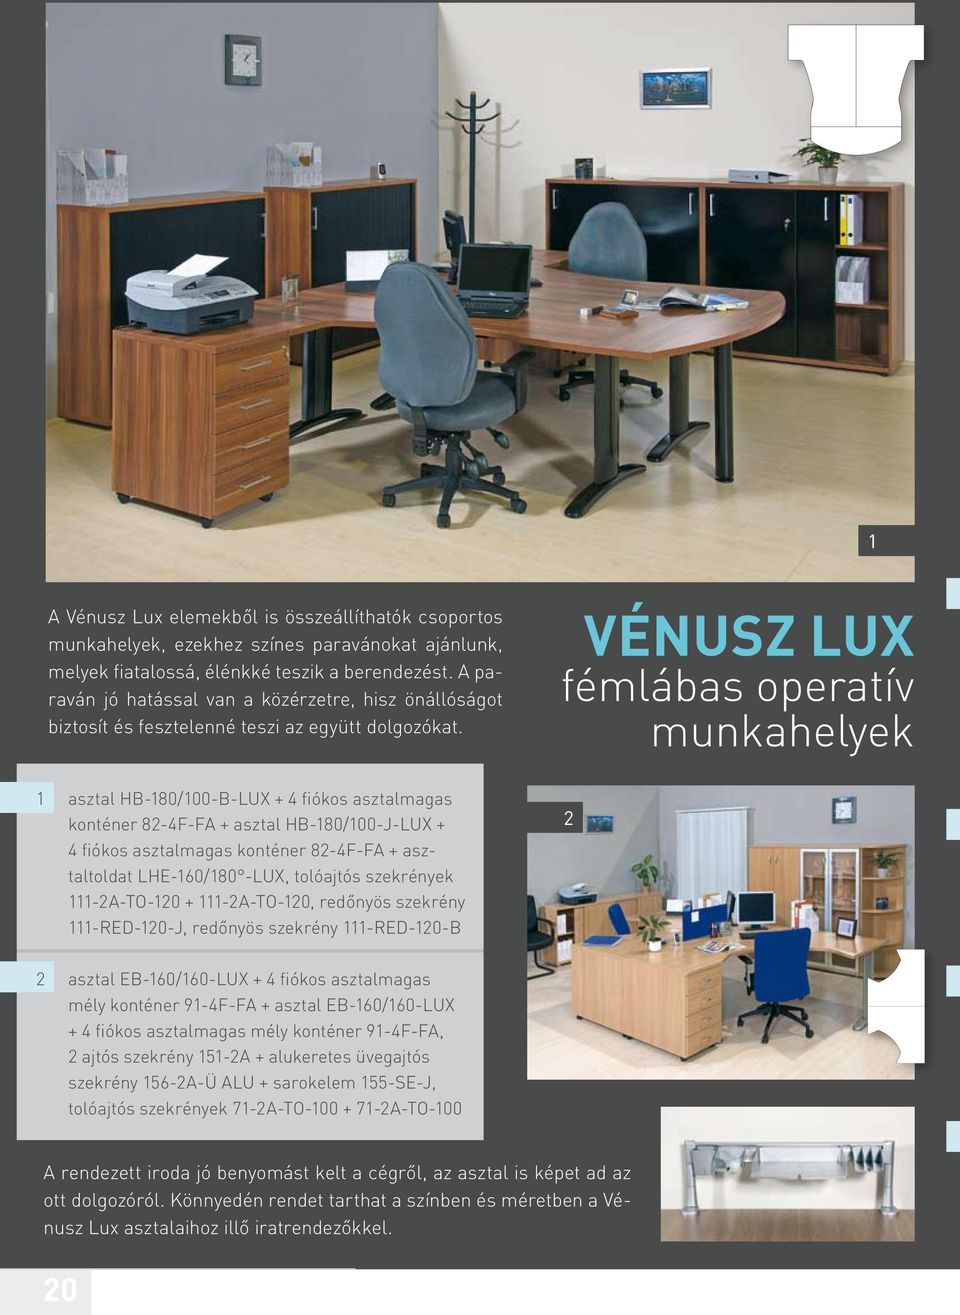 Vénusz LUX fémlábas operatív munkahelyek 1 asztal HB-180/100-B-LUX + 4 fiókos asztalmagas konténer 82-4F-FA + asztal HB-180/100-J-LUX + 4 fiókos asztalmagas konténer 82-4F-FA + asztaltoldat